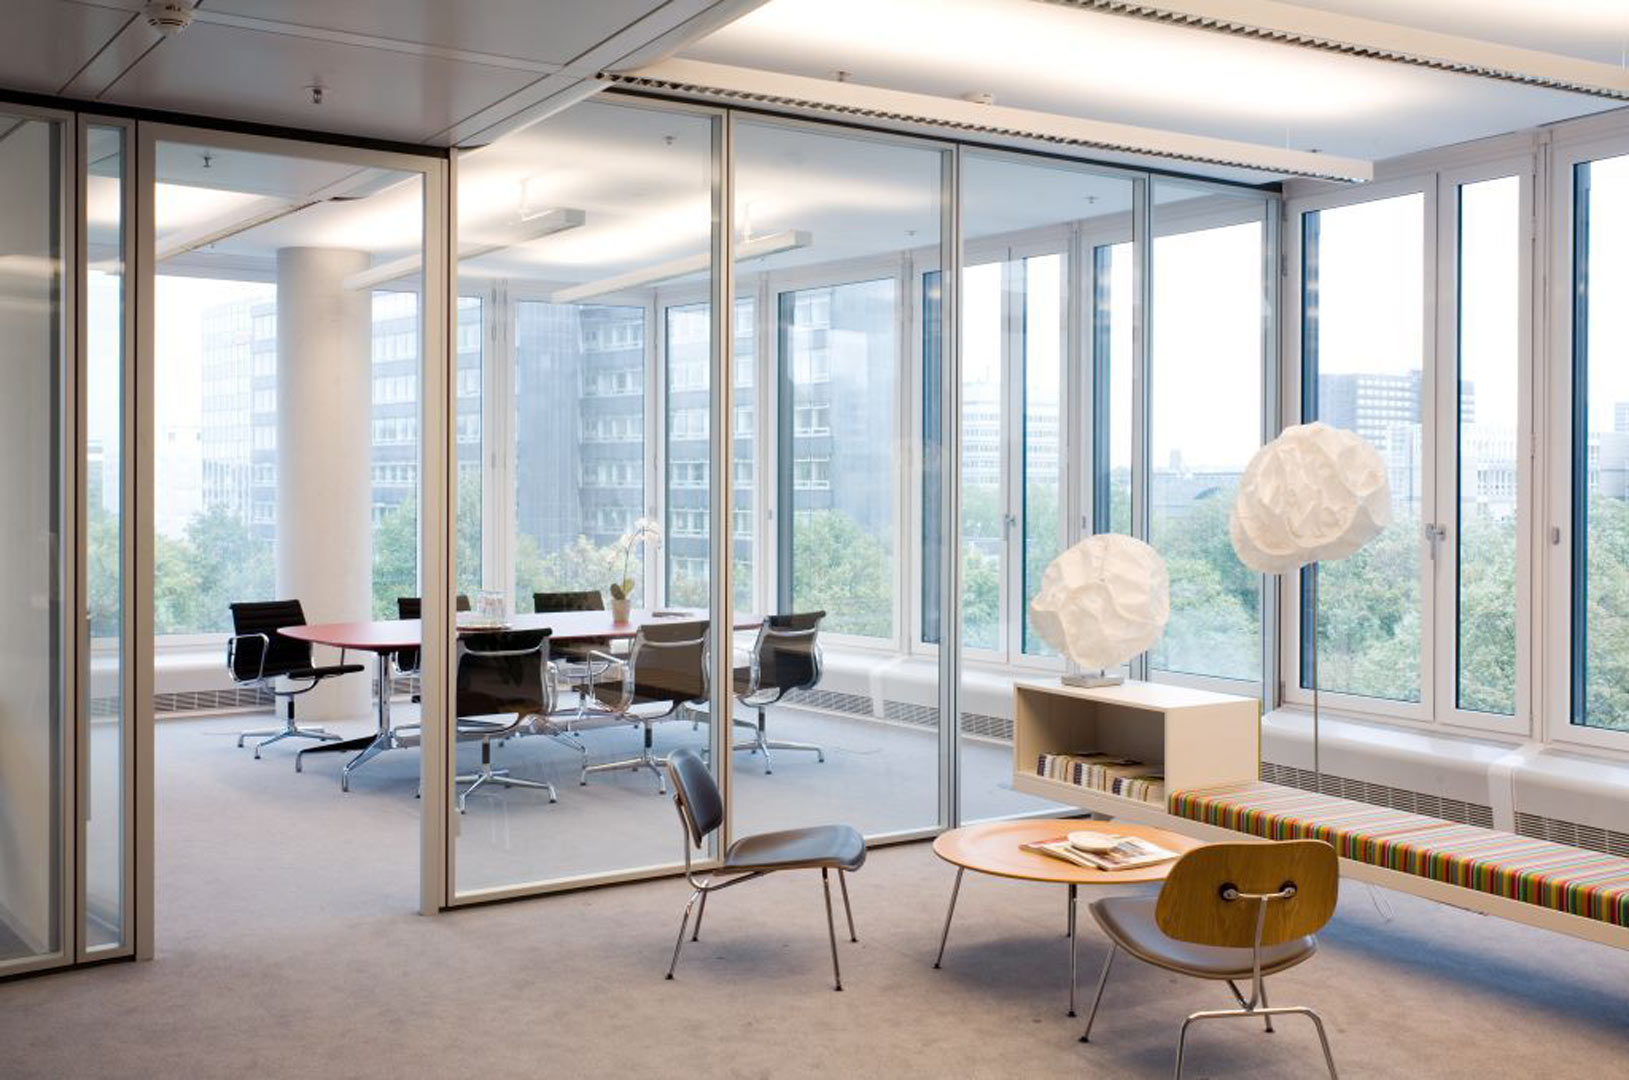 Thiết kế ánh sáng phù hợp cho không gian văn phòng